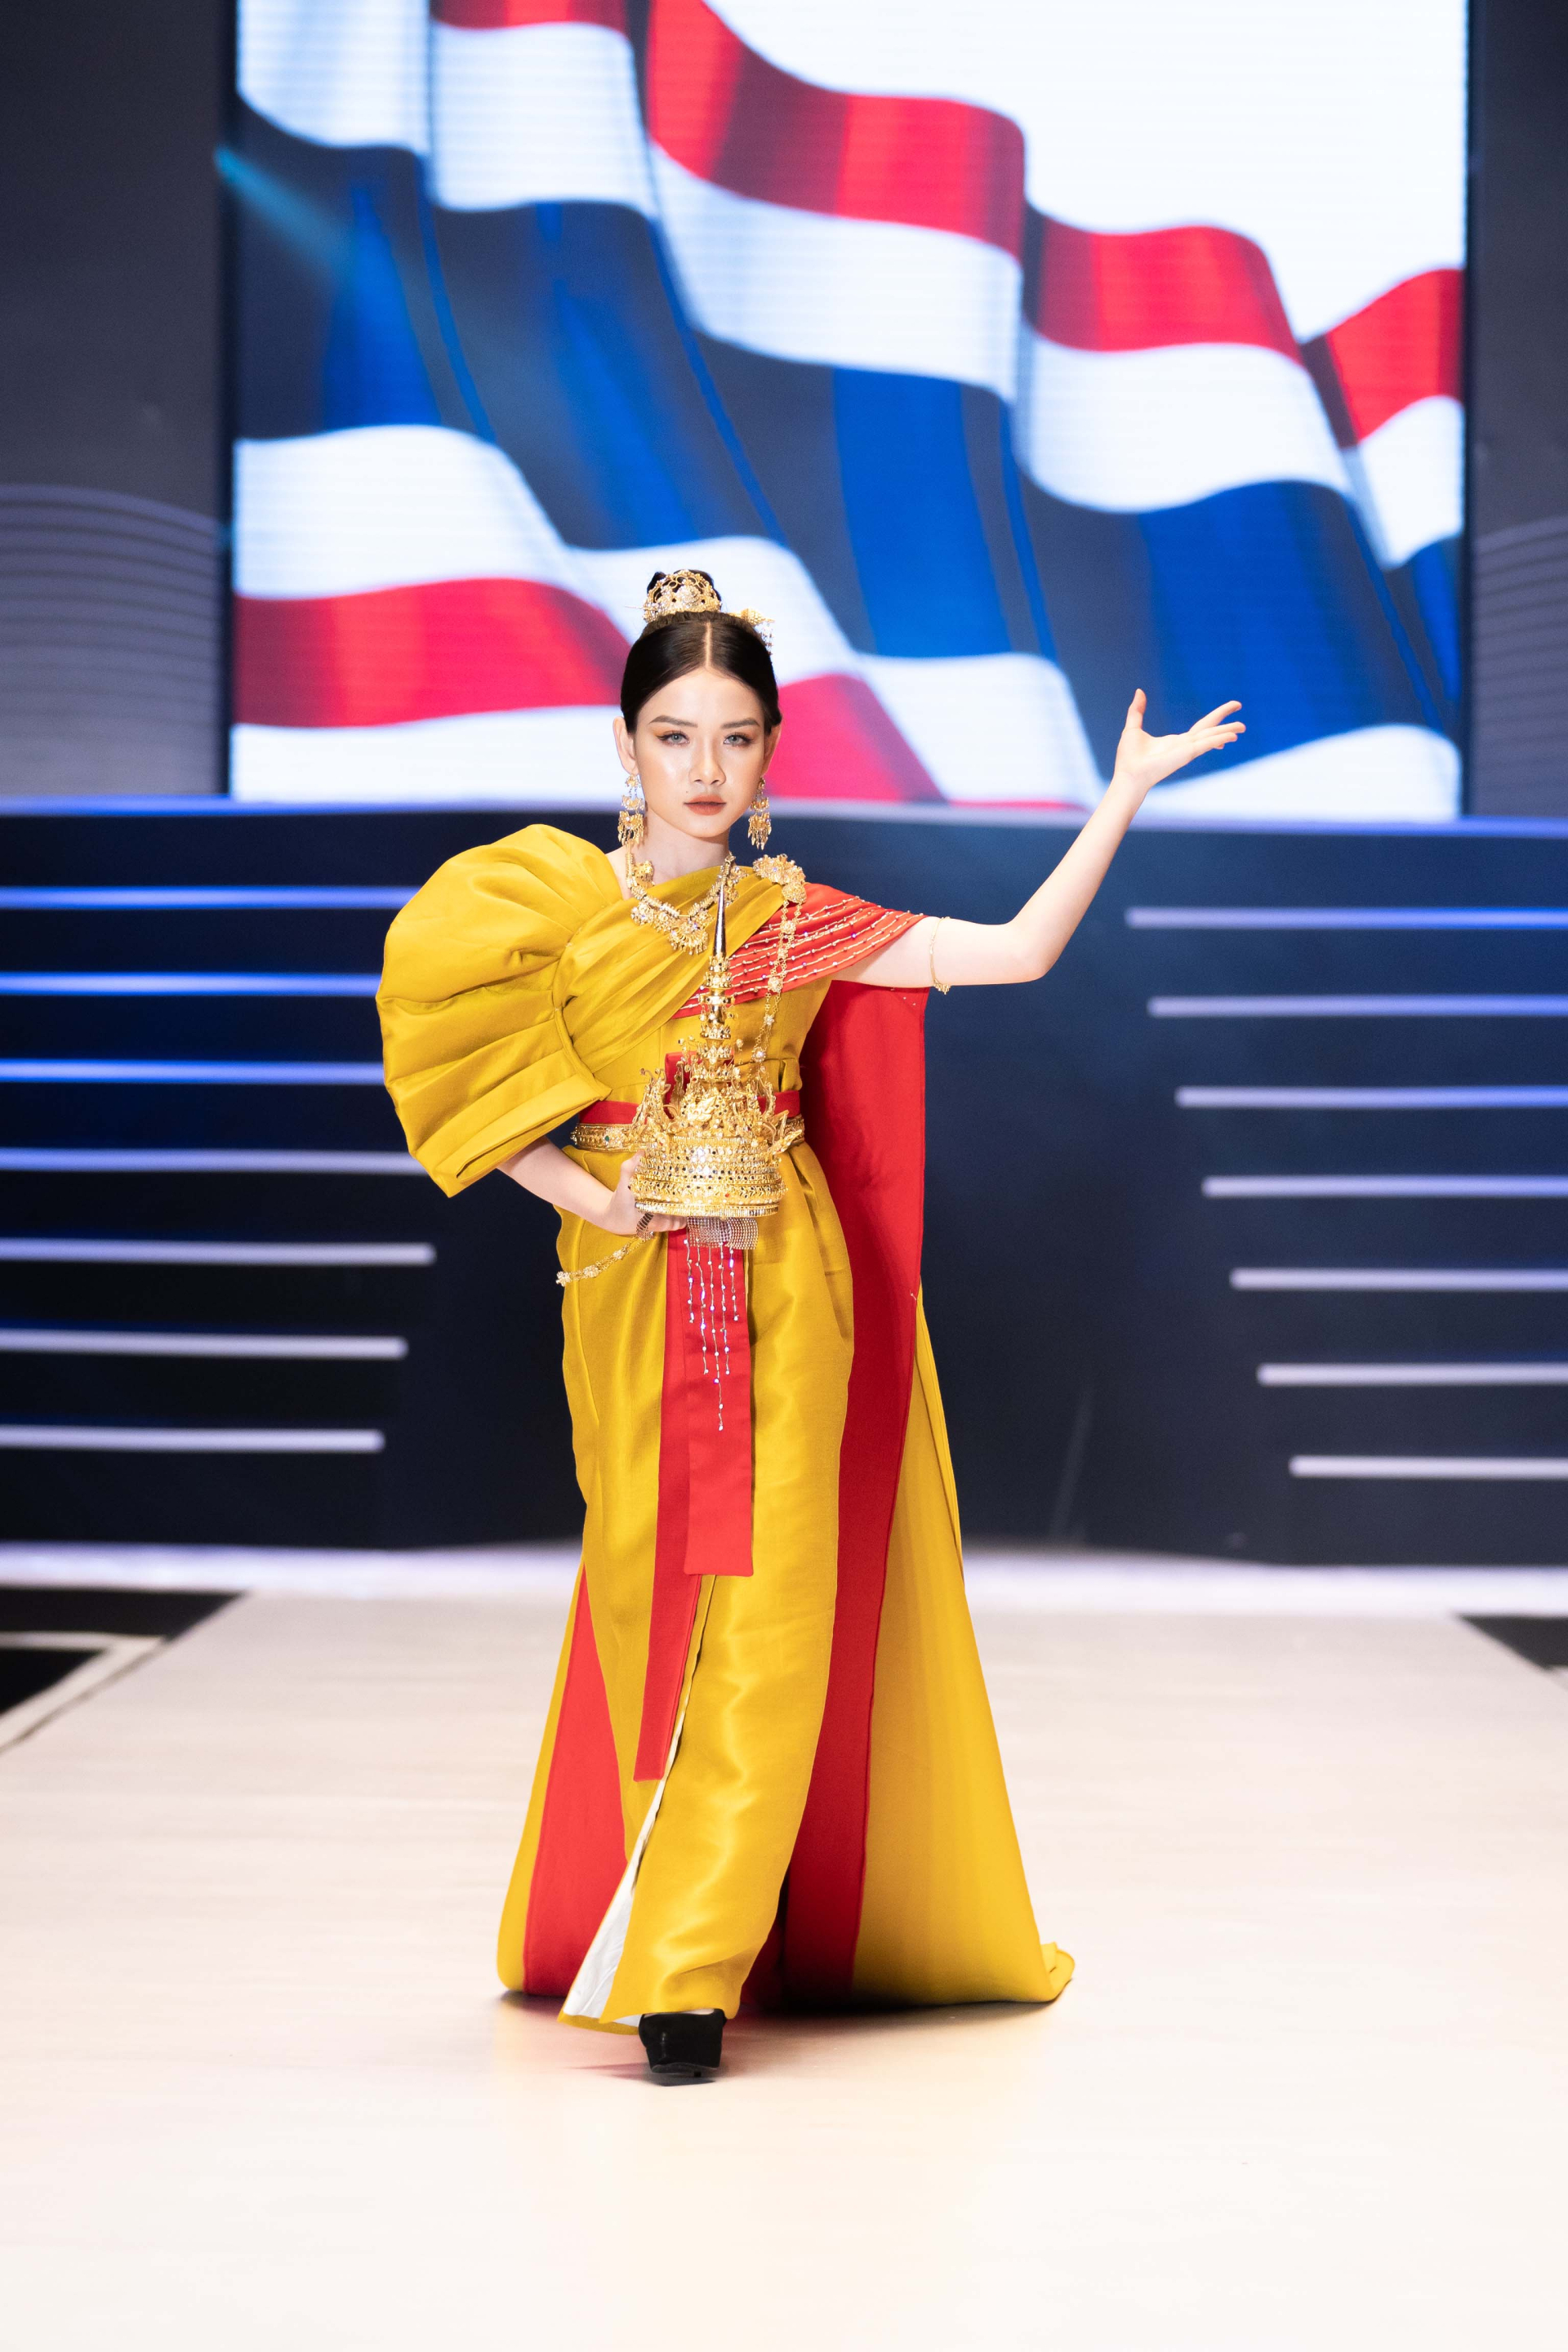 Mẫu nhí mở màn ấn tượng tại Đại hội Siêu mẫu nhí cùng trang phục lấy ý tưởng từ xứ sở chùa Vàng-3